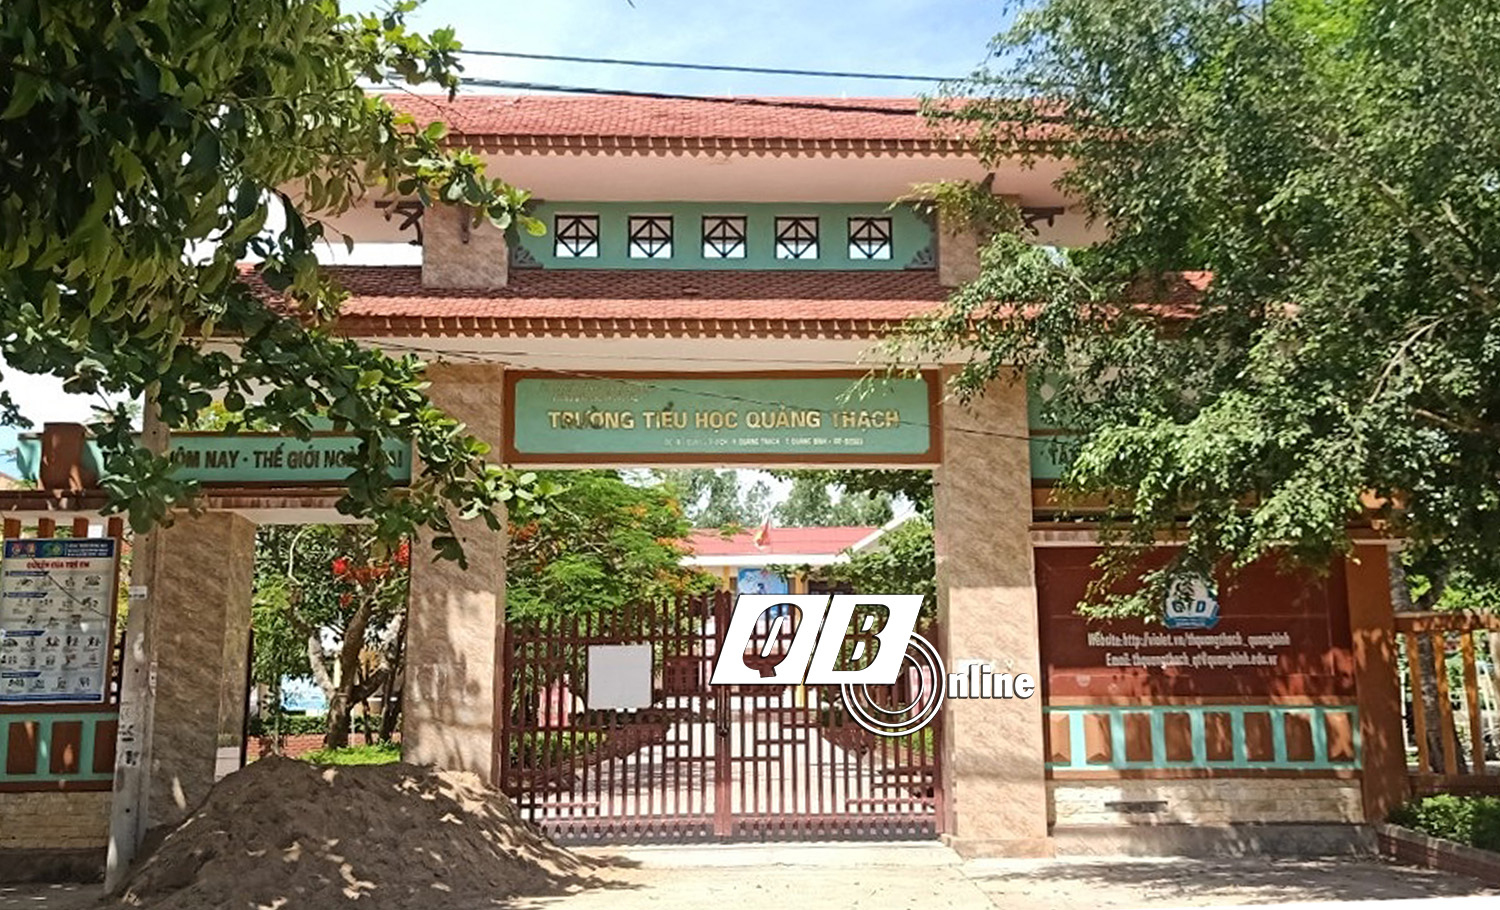 Kỷ luật cảnh cáo lãnh đạo Trường tiểu học Quảng Thạch